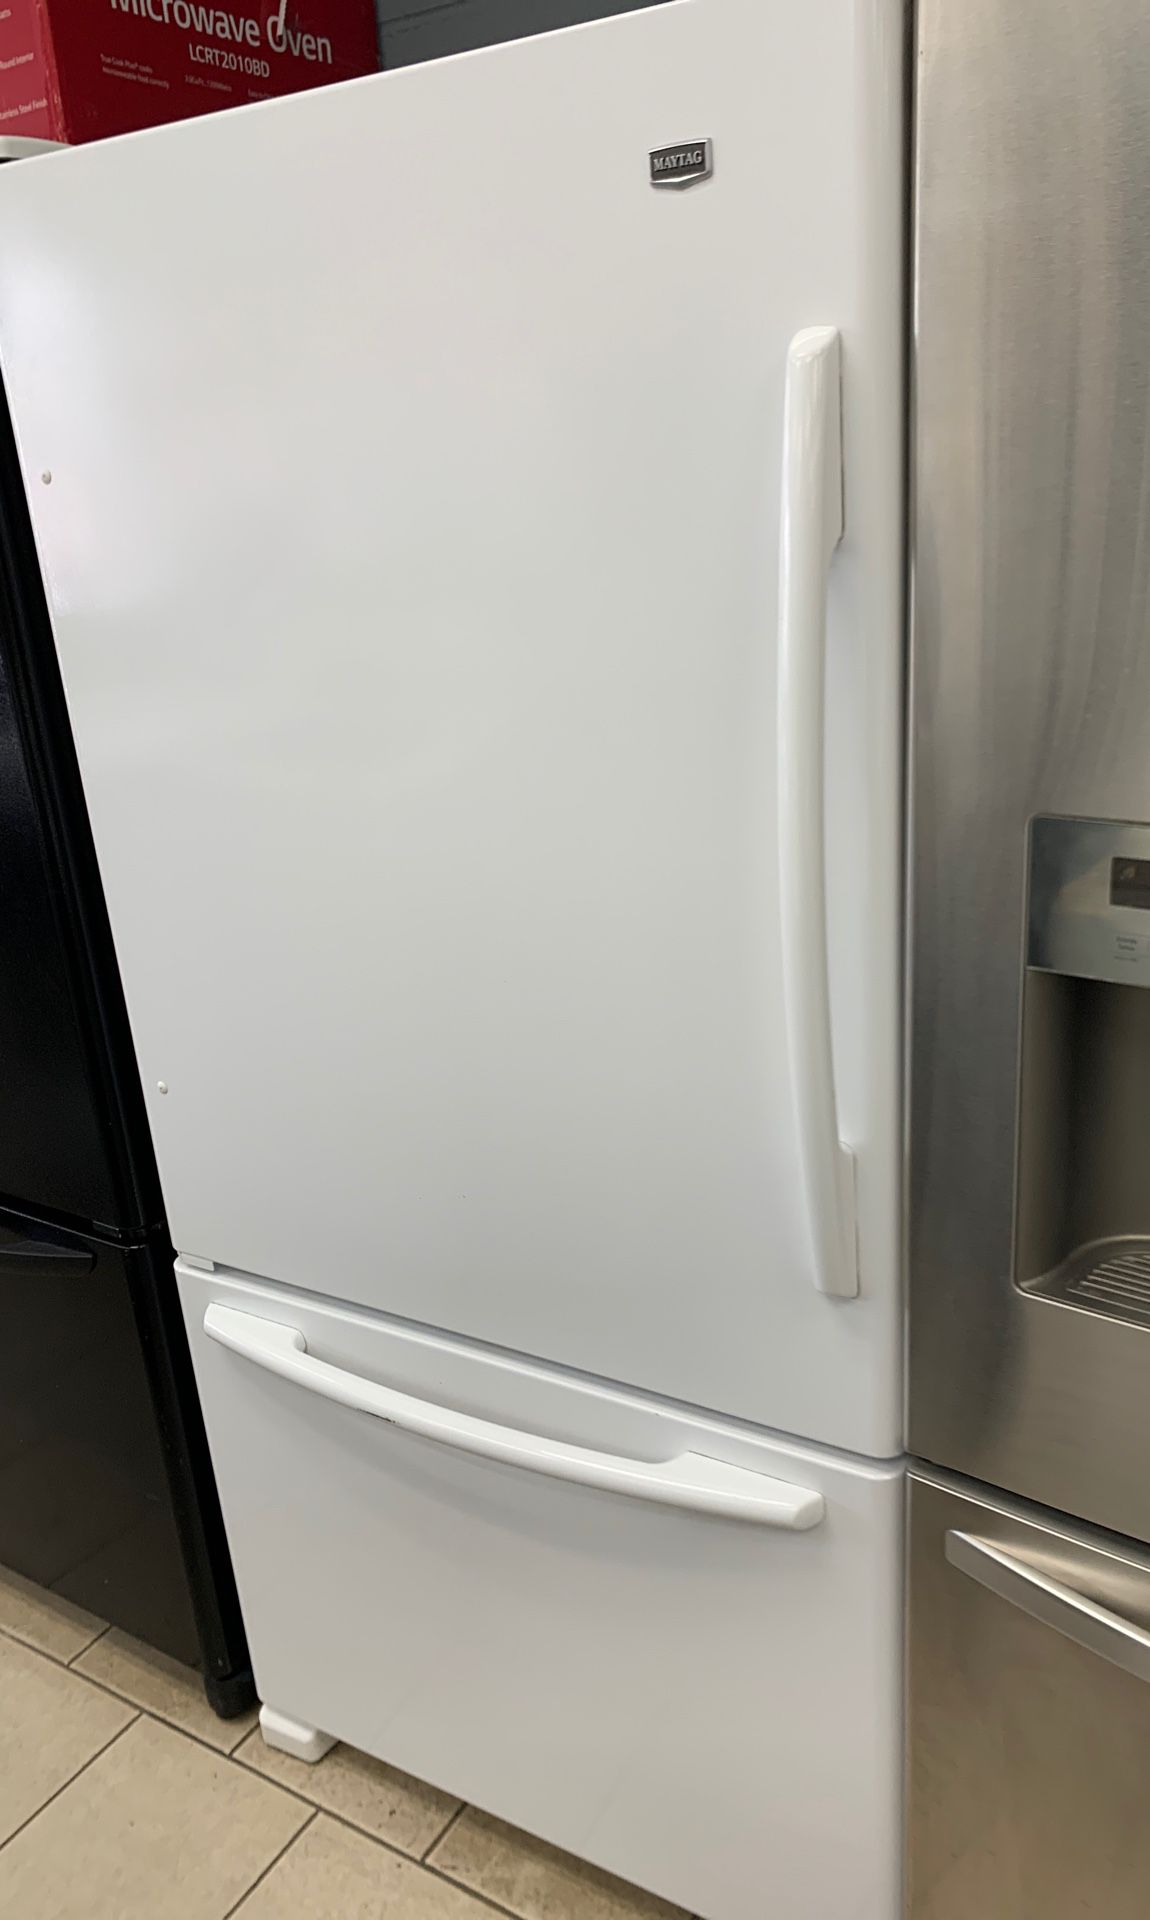 Maytag Bottom freezer refrigerator